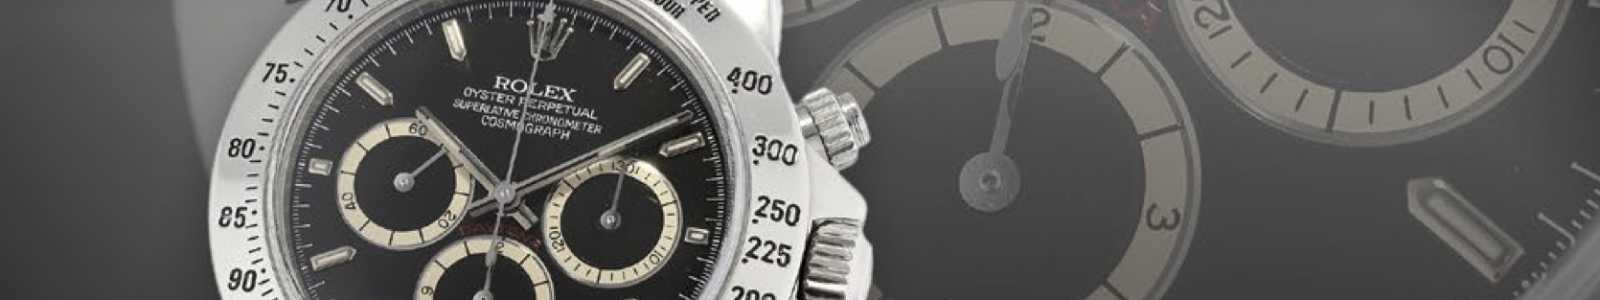 Sacs à main et montres de haute qualité, montres de collection exquises